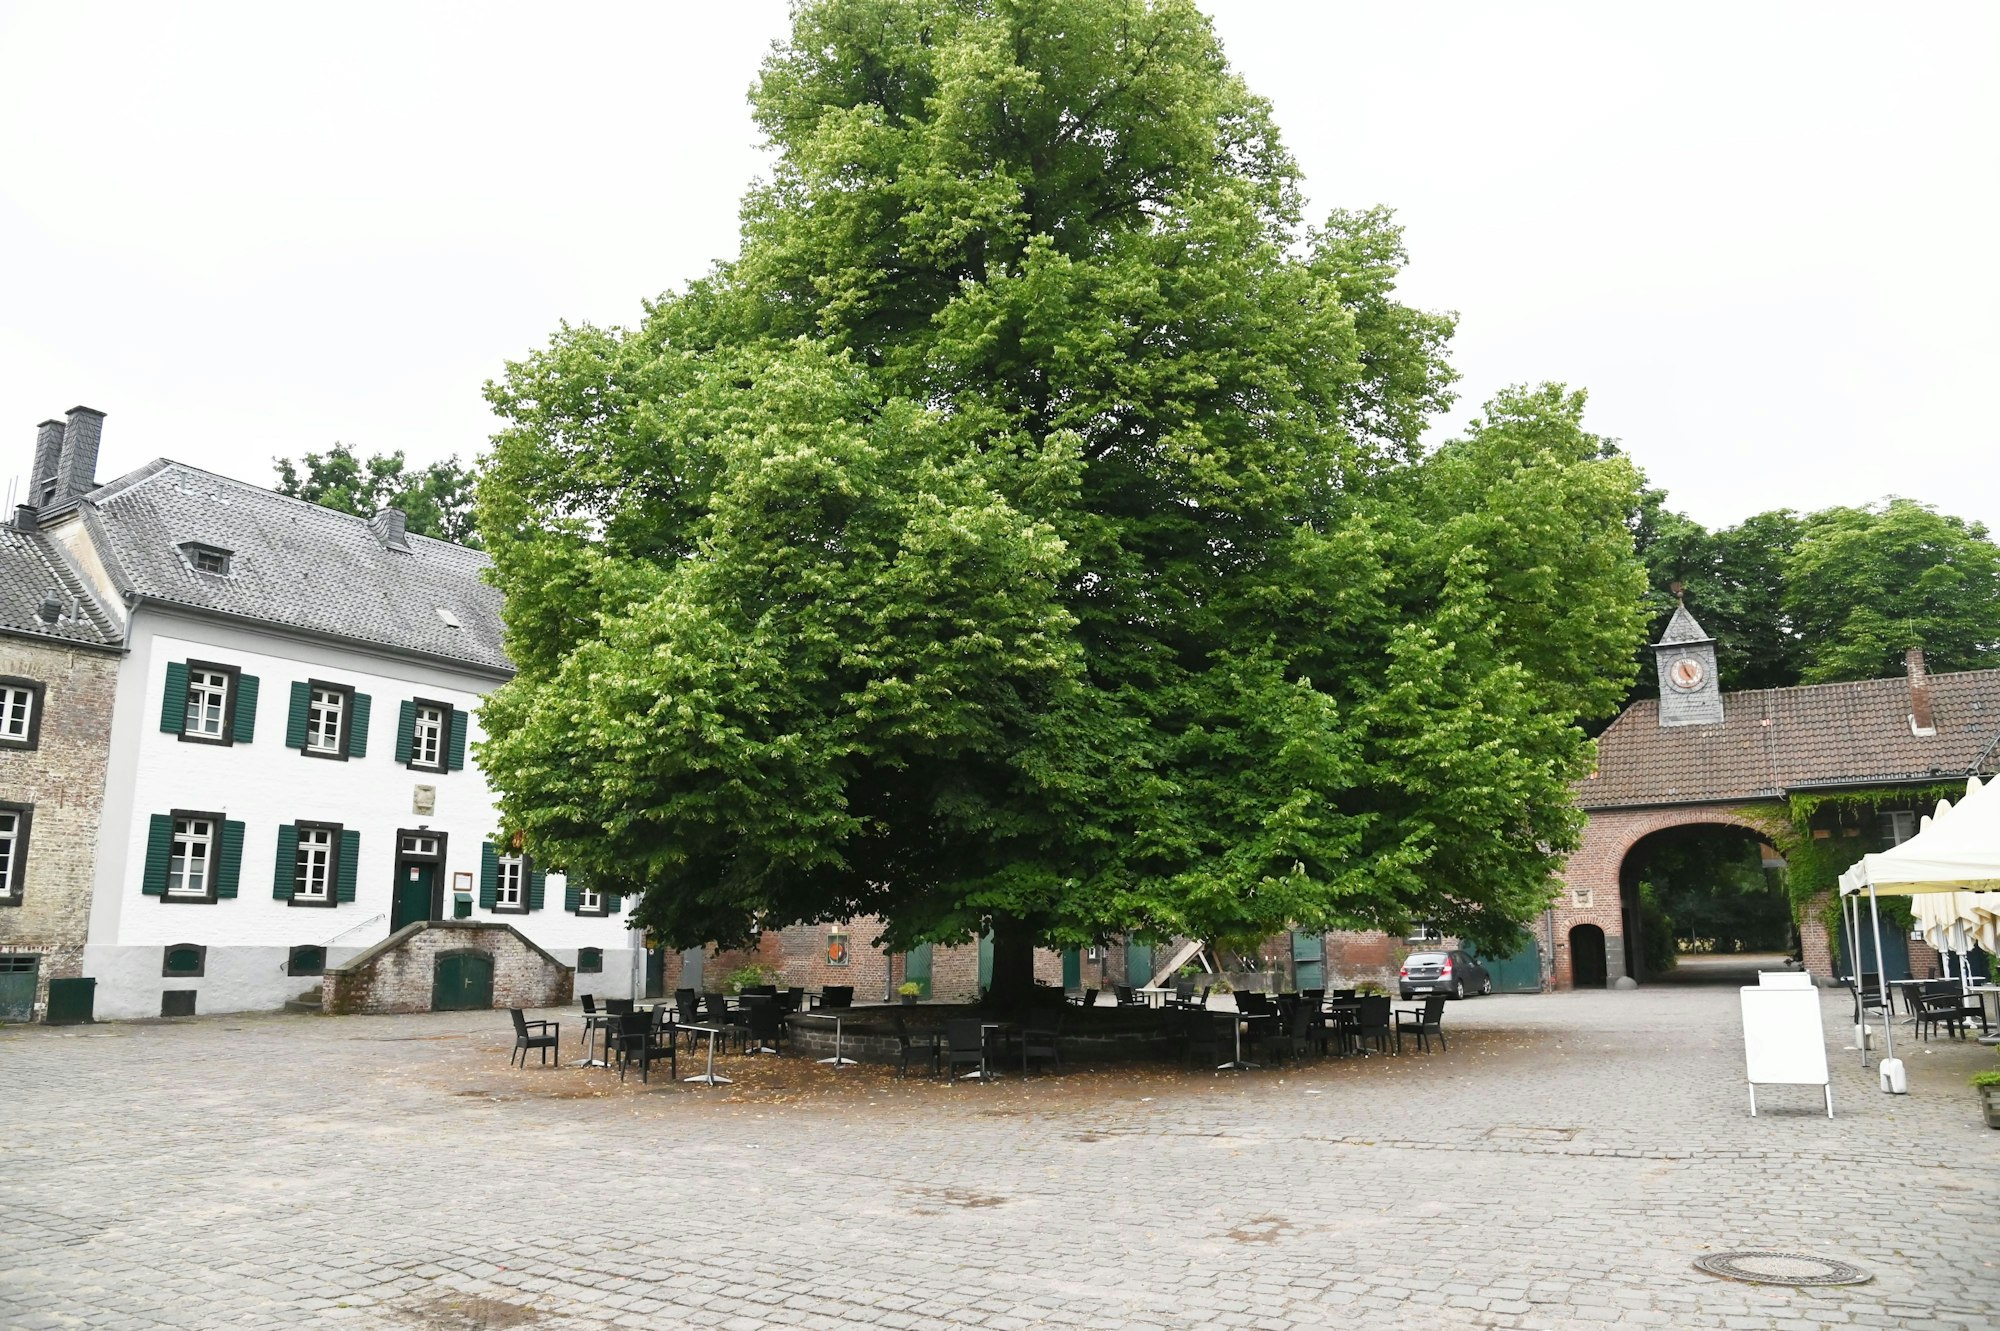 Blick in den Innenhof von Gut Leidenhausen. In der Mitte stehen Tische und Bänke unter einem großen Baum.